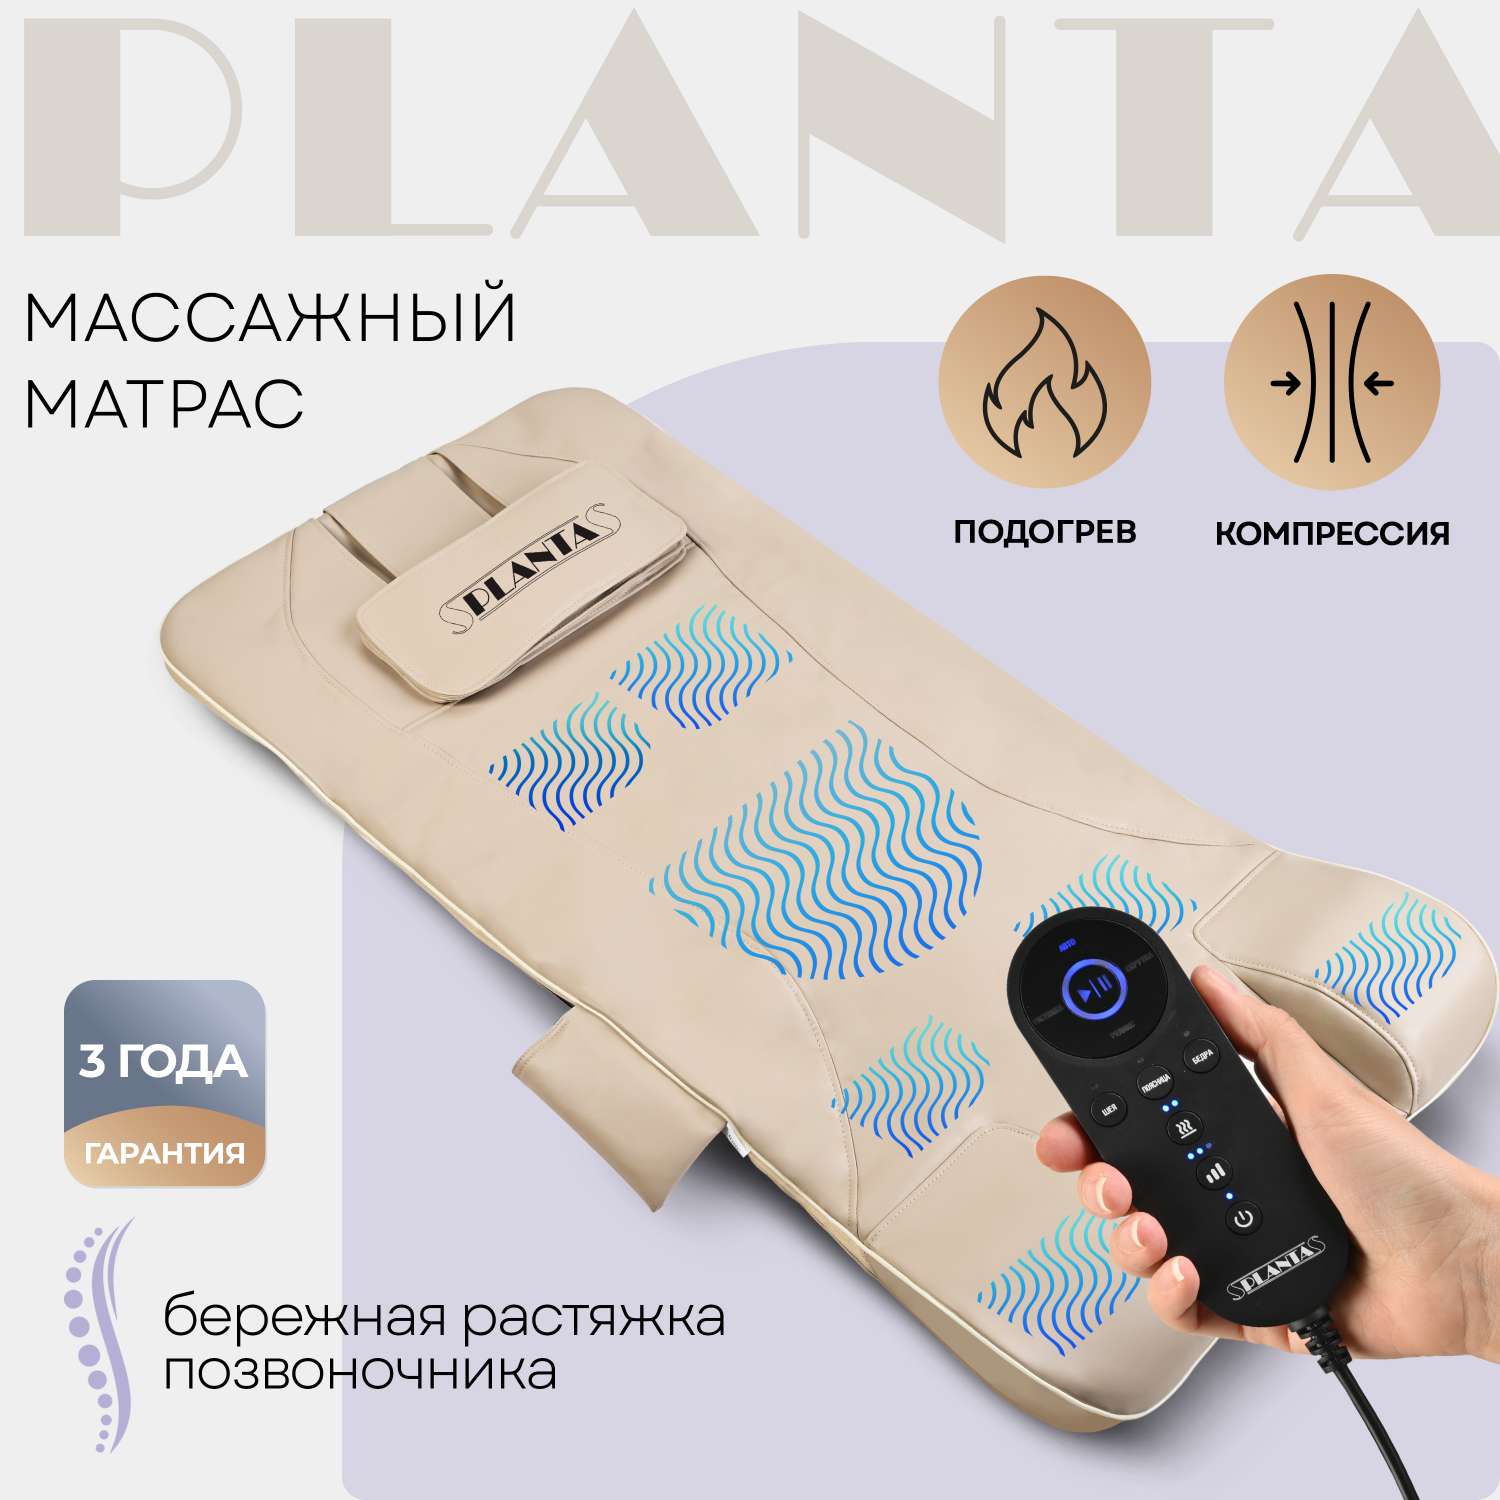 Массажный матрас Planta MM-7000 компрессионный массаж спины и шеи бережная растяжка - фото 1